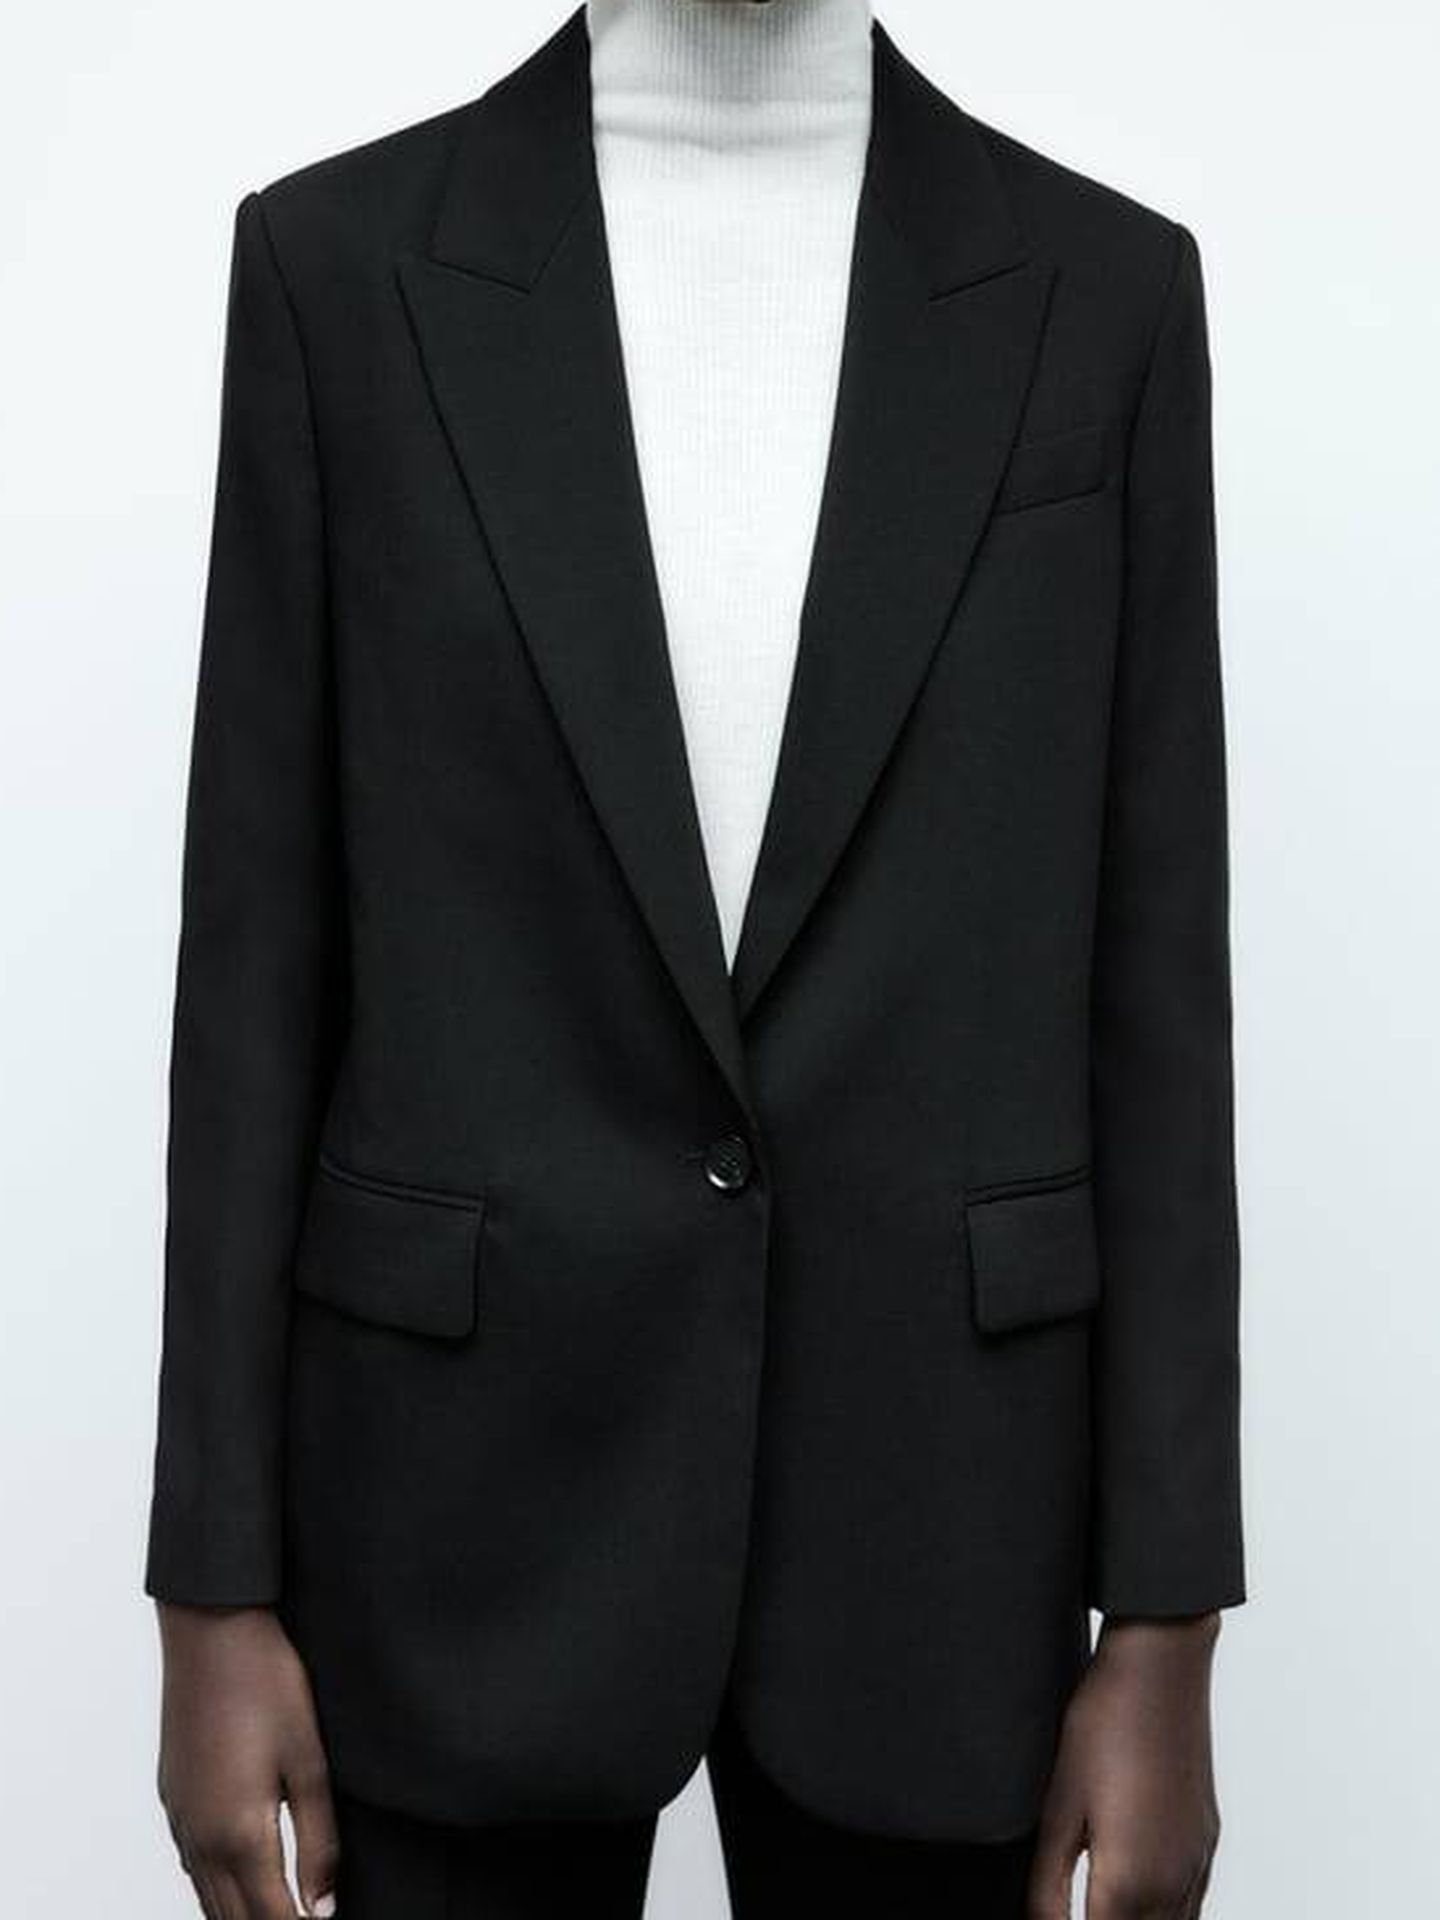 3 imprescindibles muy chic de Zara: chaqueta, bolso y botines. (Cortesía)